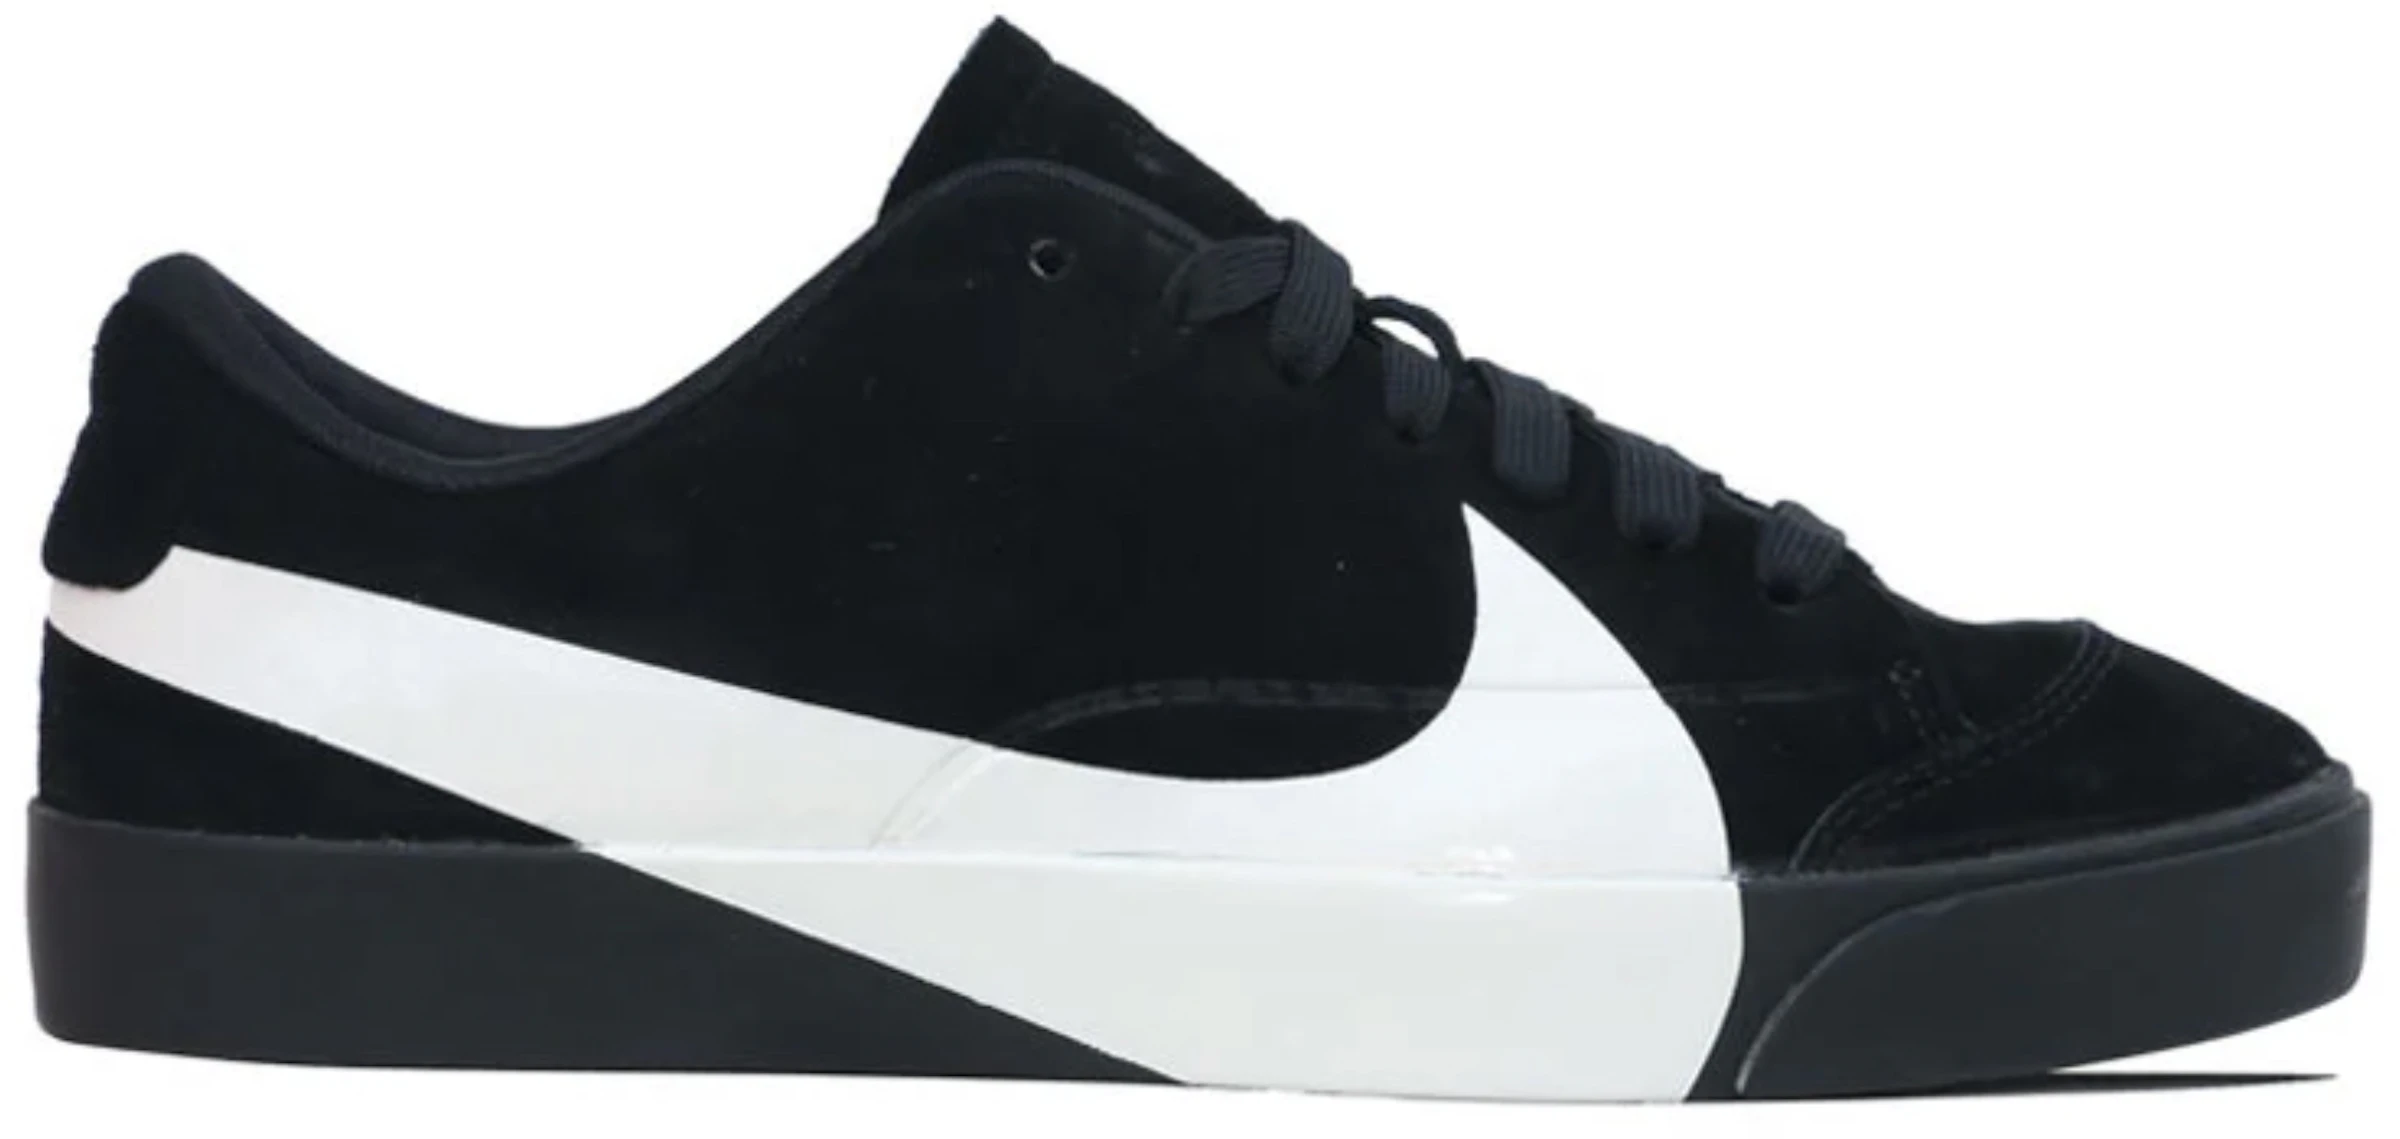 Nike City Low LX Black White - AV2253-001 - ES